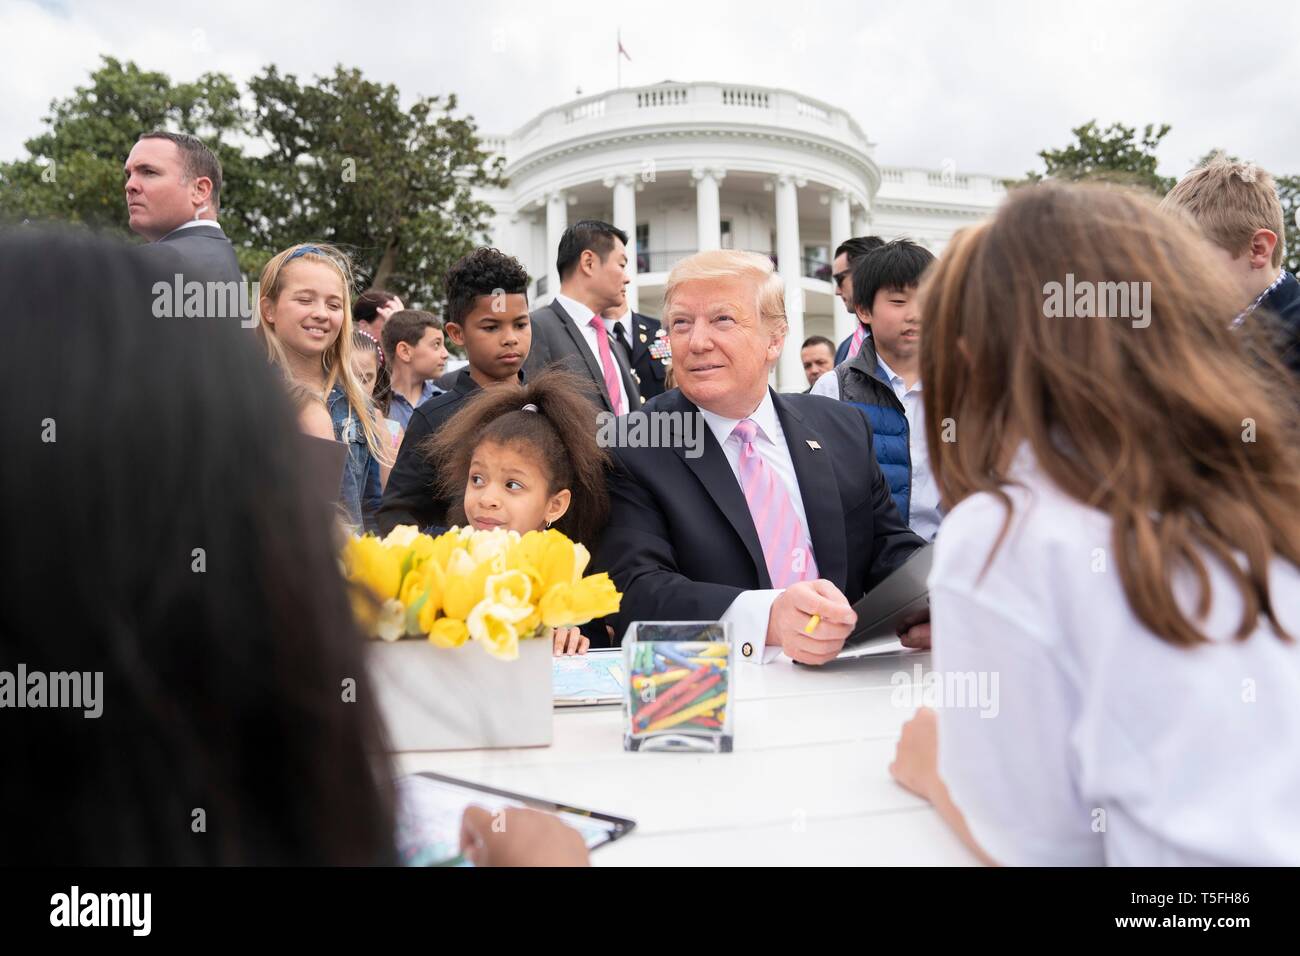 U.S presidente Donald Trump unisce i bambini ad una tabella di colorazione durante il White House Easter Egg Roll evento sul prato Sud della Casa Bianca Aprile 22, 2019 a Washington, DC. Questa è la 141anno per le relazioni annuali di primavera evento. Foto Stock